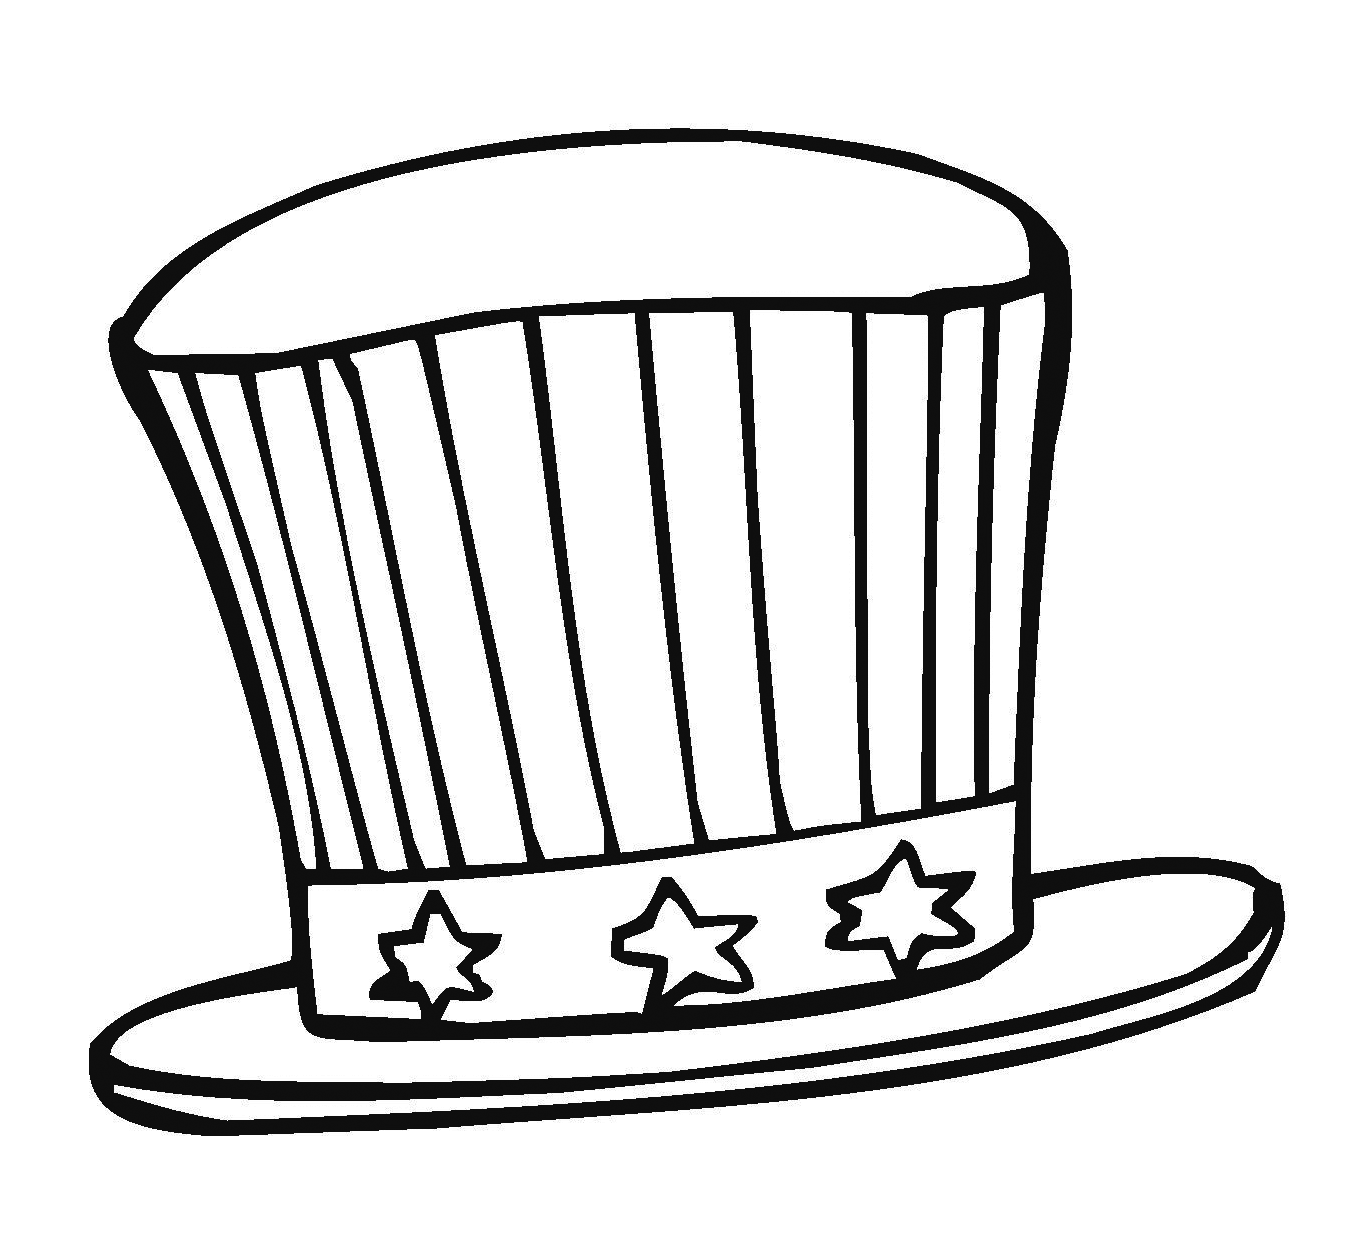 Шляпа раскраска для детей